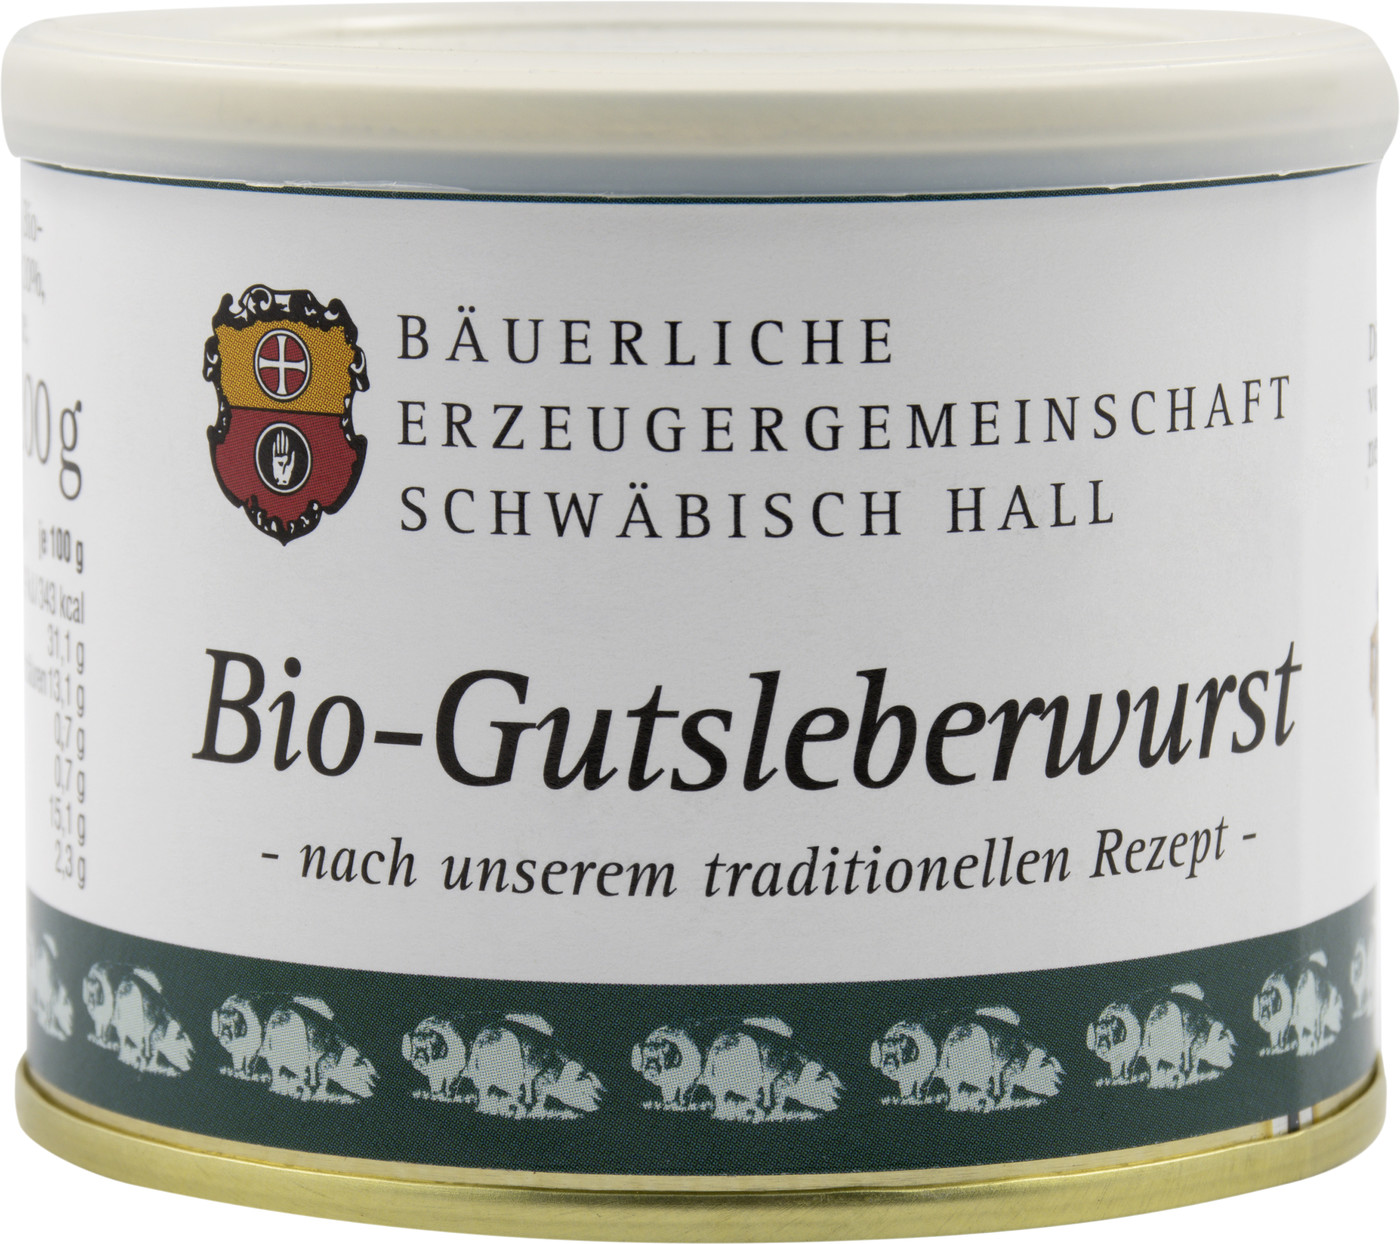 Bäuerliche EZG Schwäbisch Hall Bio-Gutsleberwurst 200G